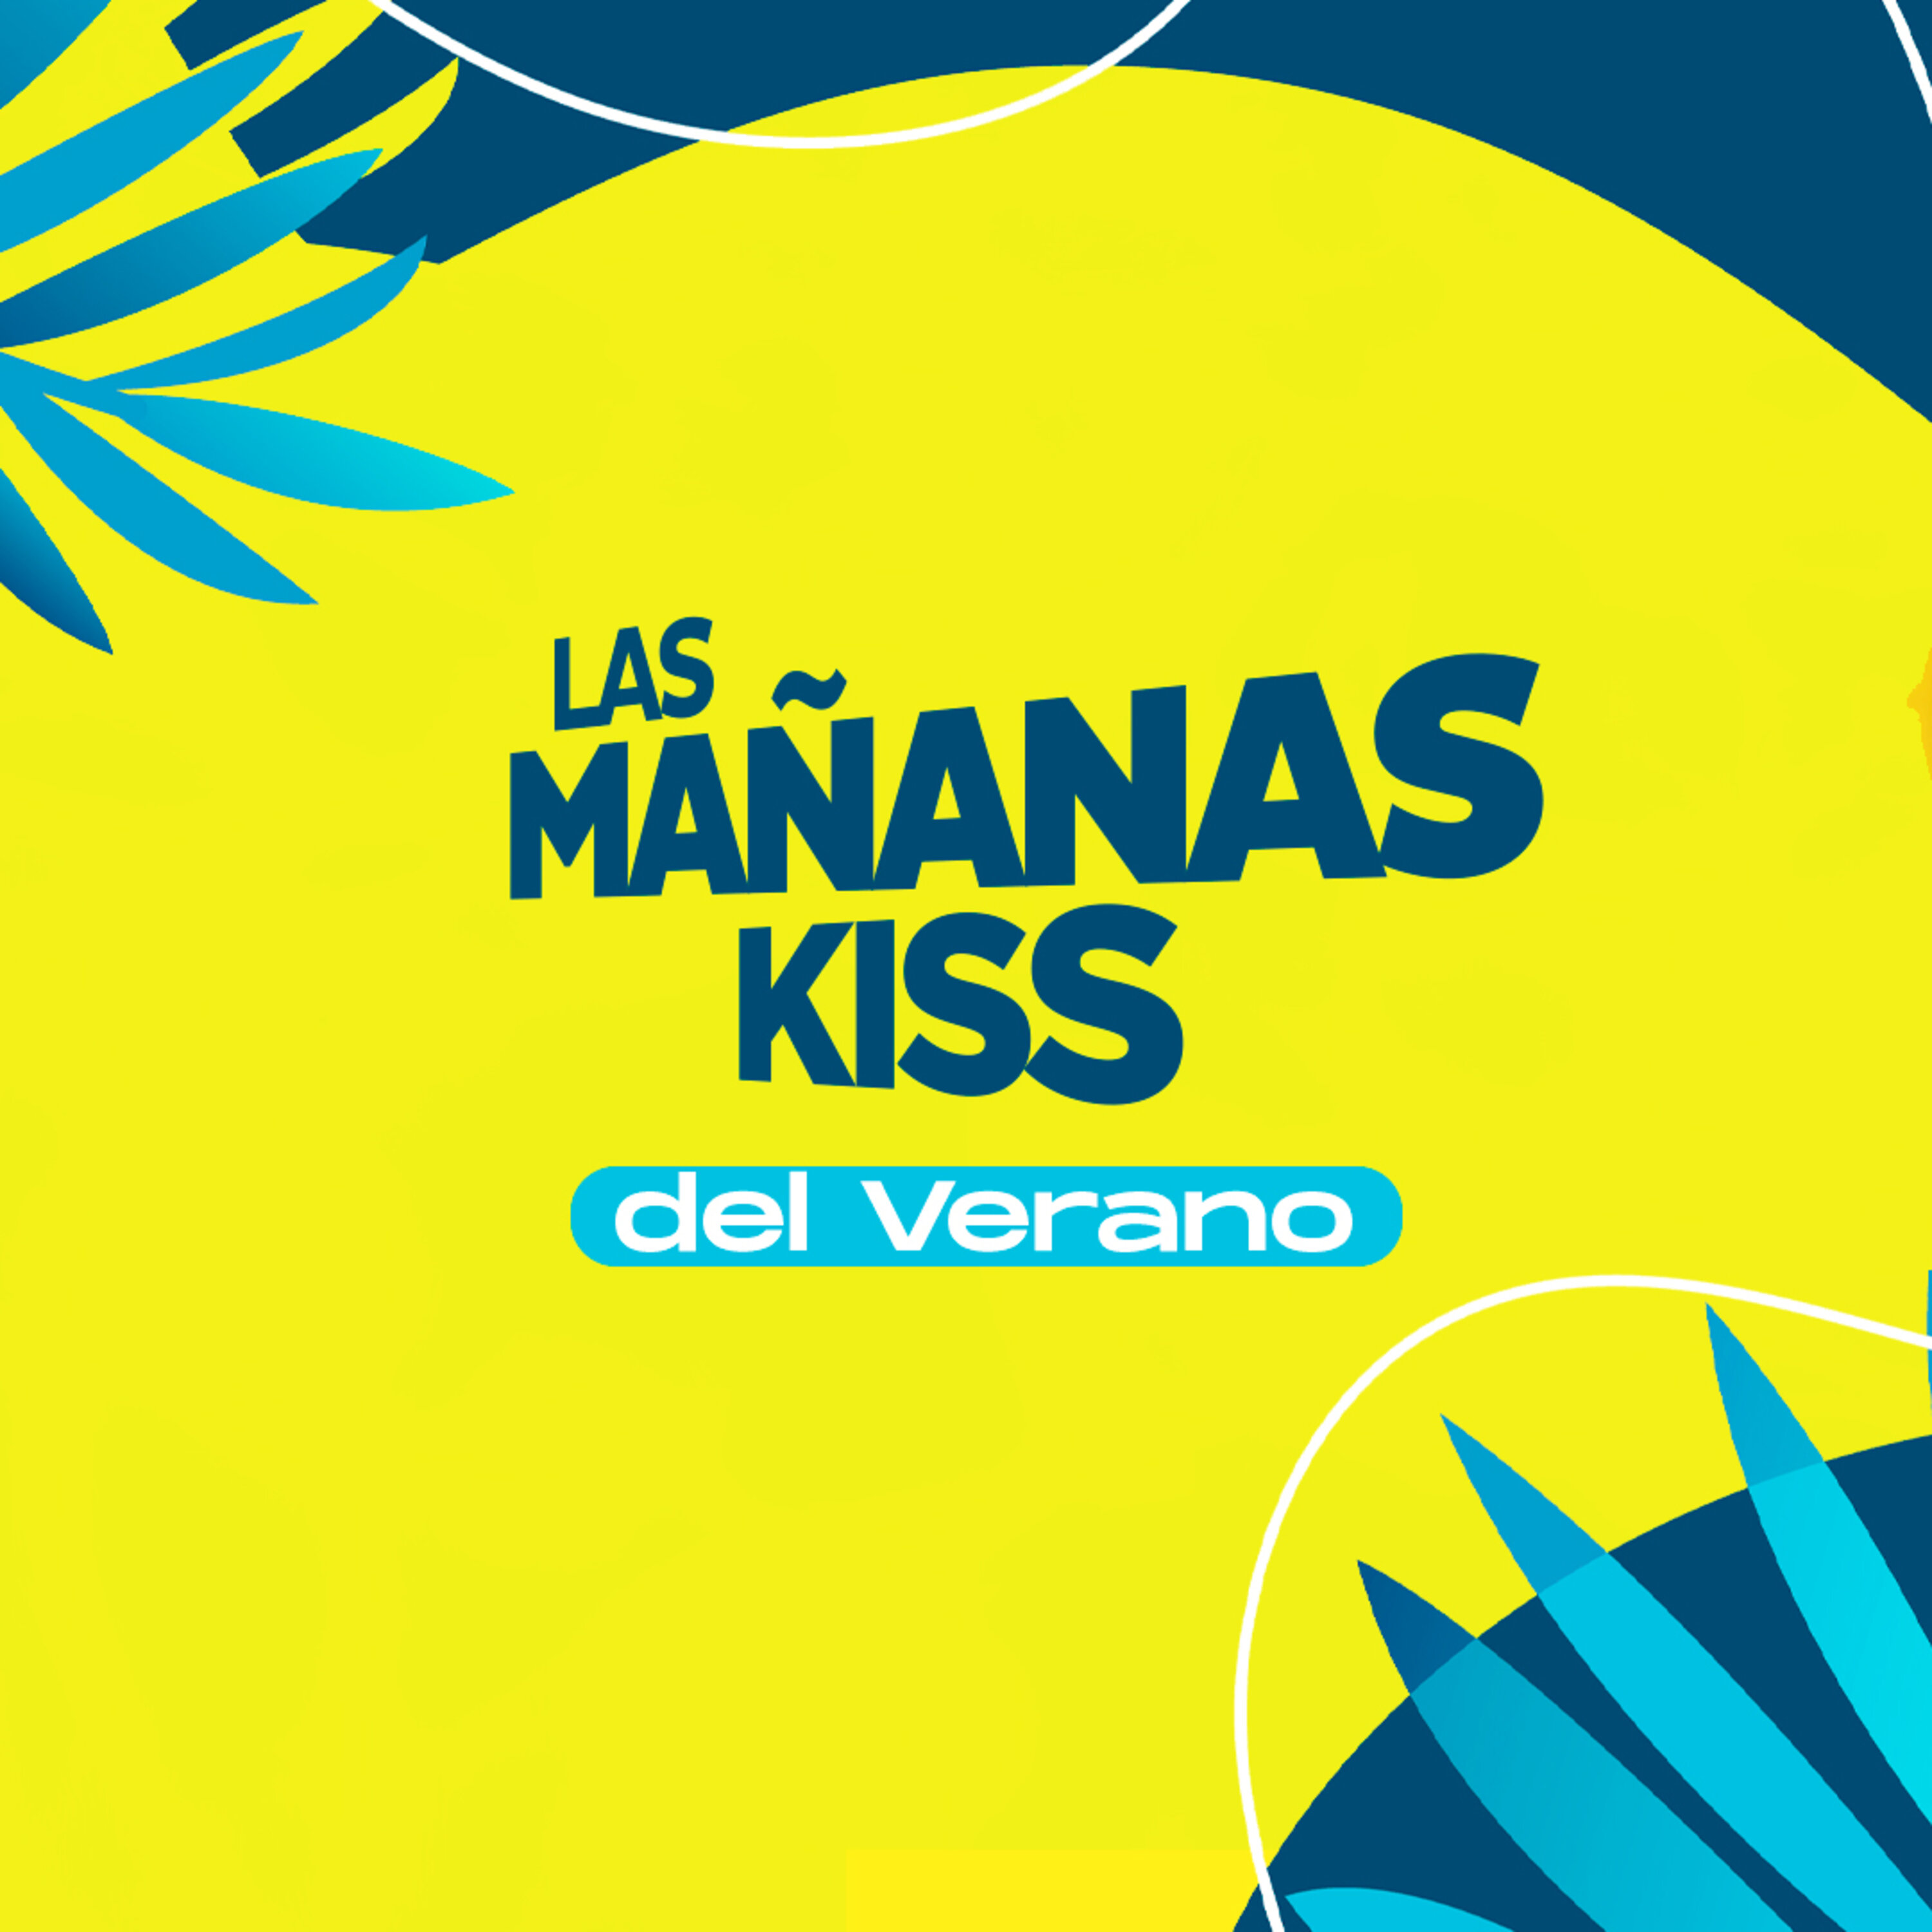 Las Mañanas KISS del Verano (24/08/2022 - 07-08h)